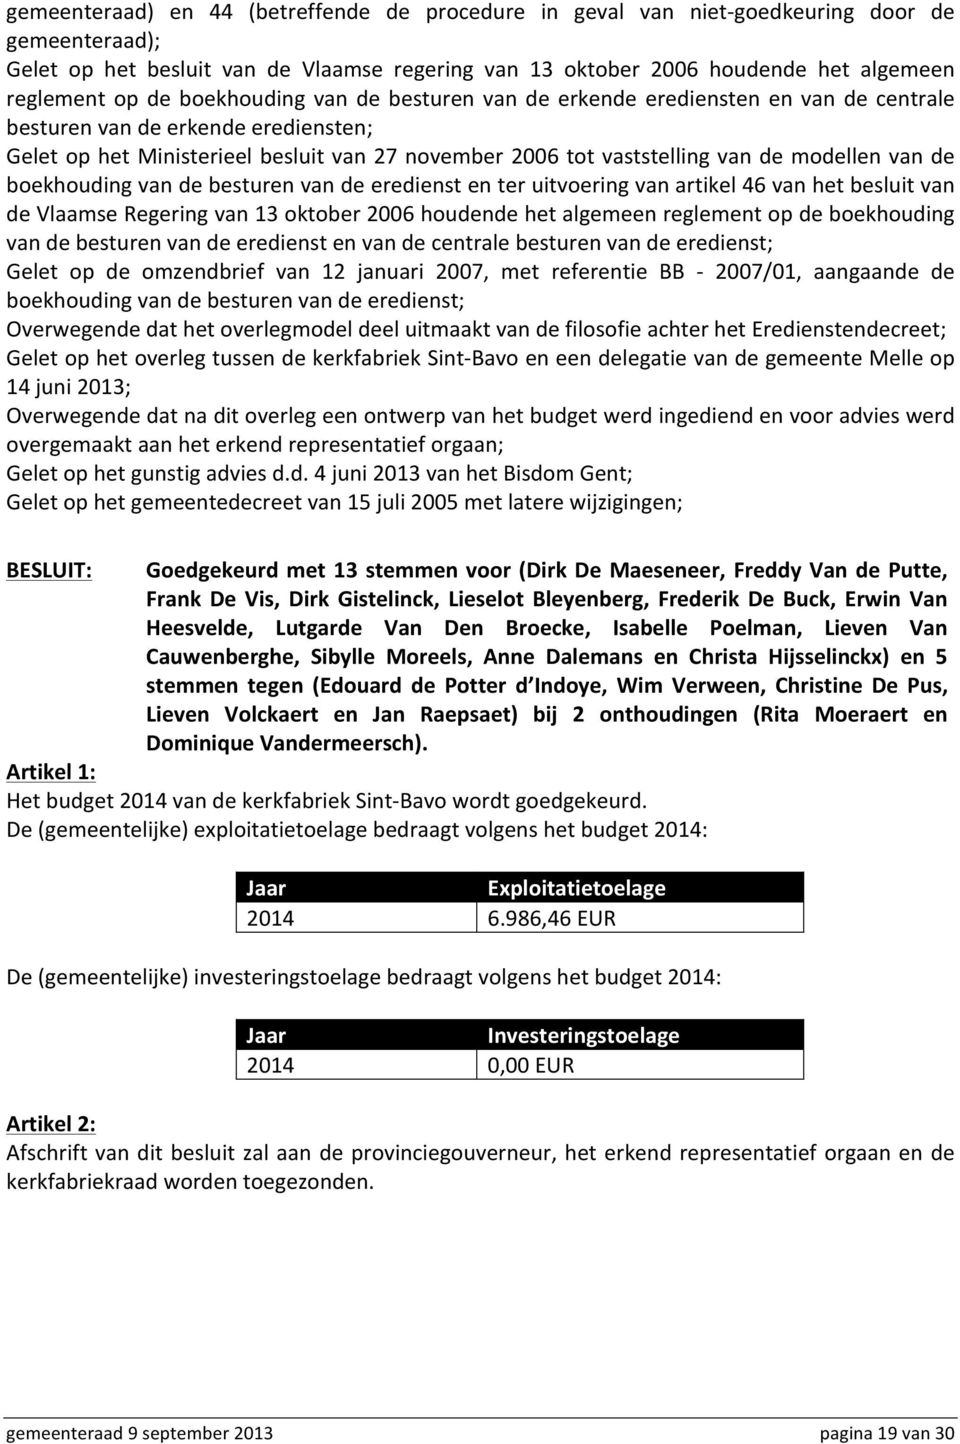 modellen van de boekhouding van de besturen van de eredienst en ter uitvoering van artikel 46 van het besluit van de Vlaamse Regering van 13 oktober 2006 houdende het algemeen reglement op de